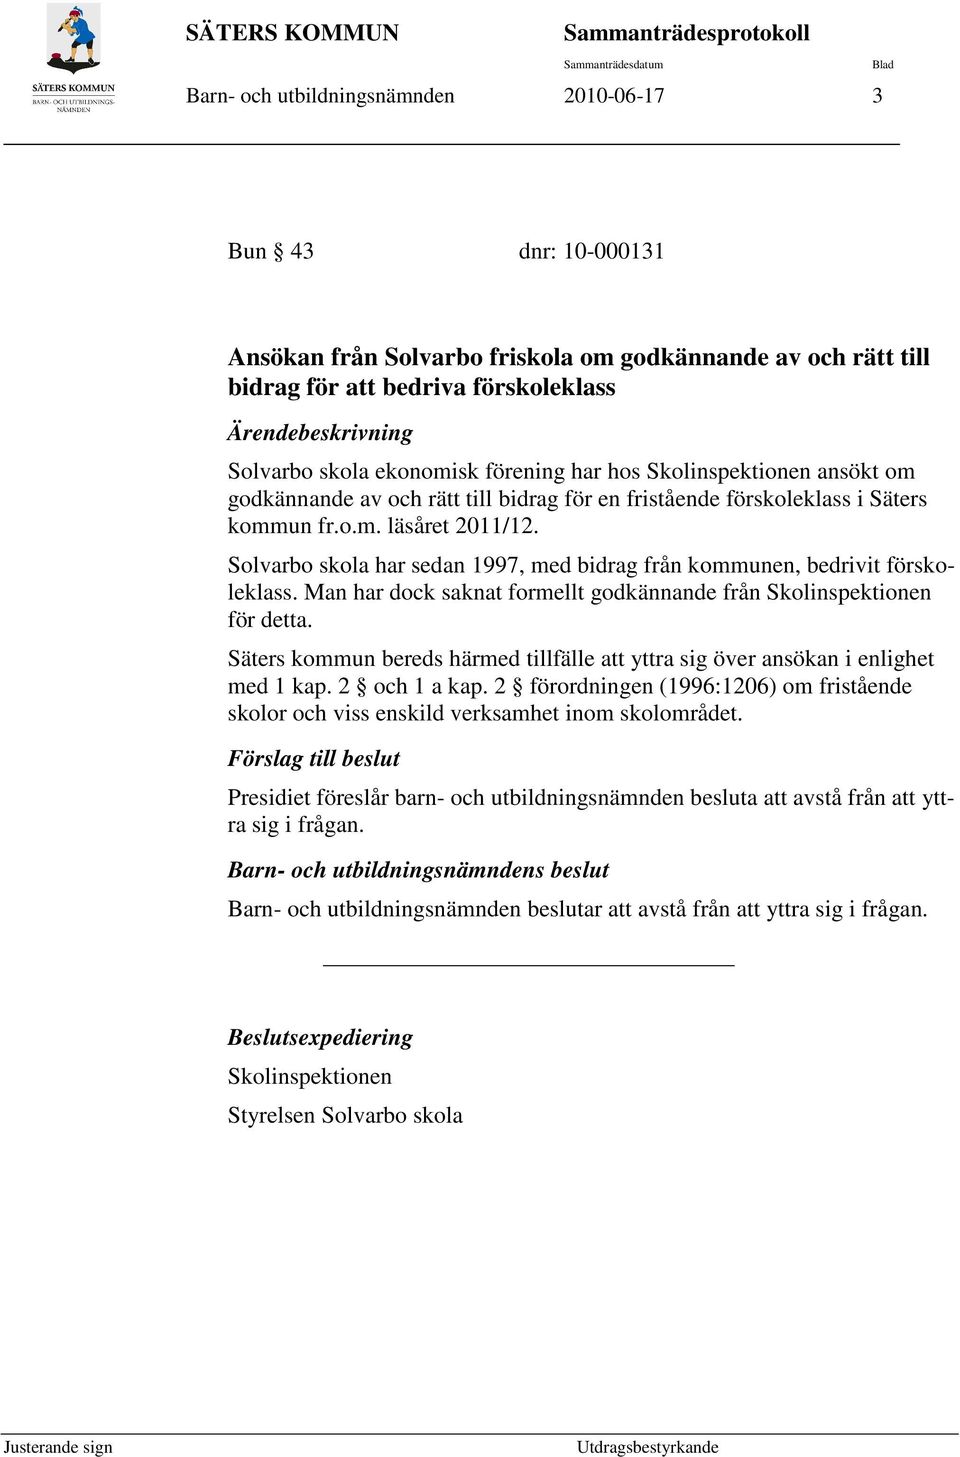 bidrag för en fristående förskoleklass i Säters kommun fr.o.m. läsåret 2011/12. Solvarbo skola har sedan 1997, med bidrag från kommunen, bedrivit förskoleklass.